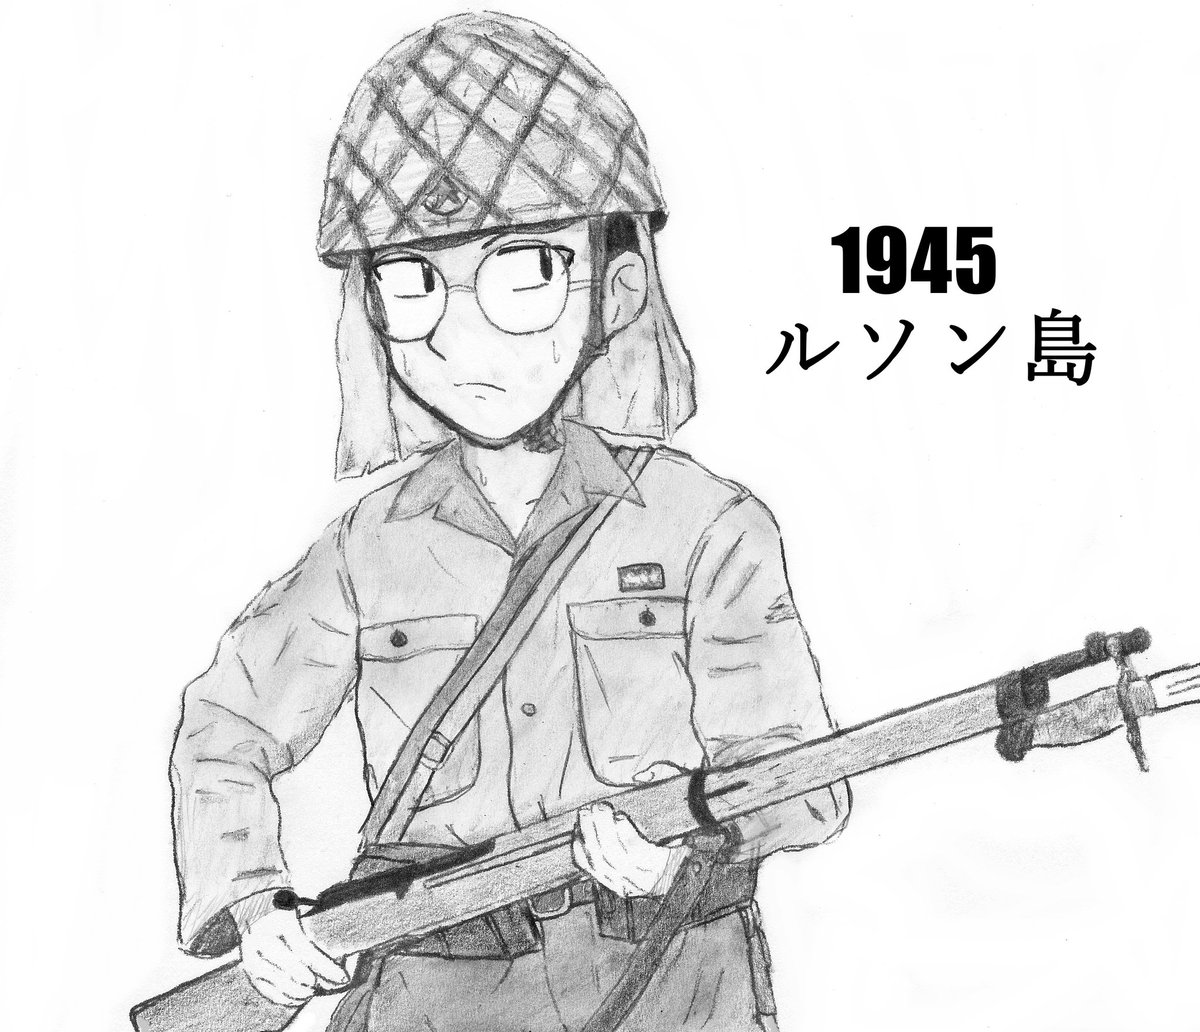 日本兵
米兵 